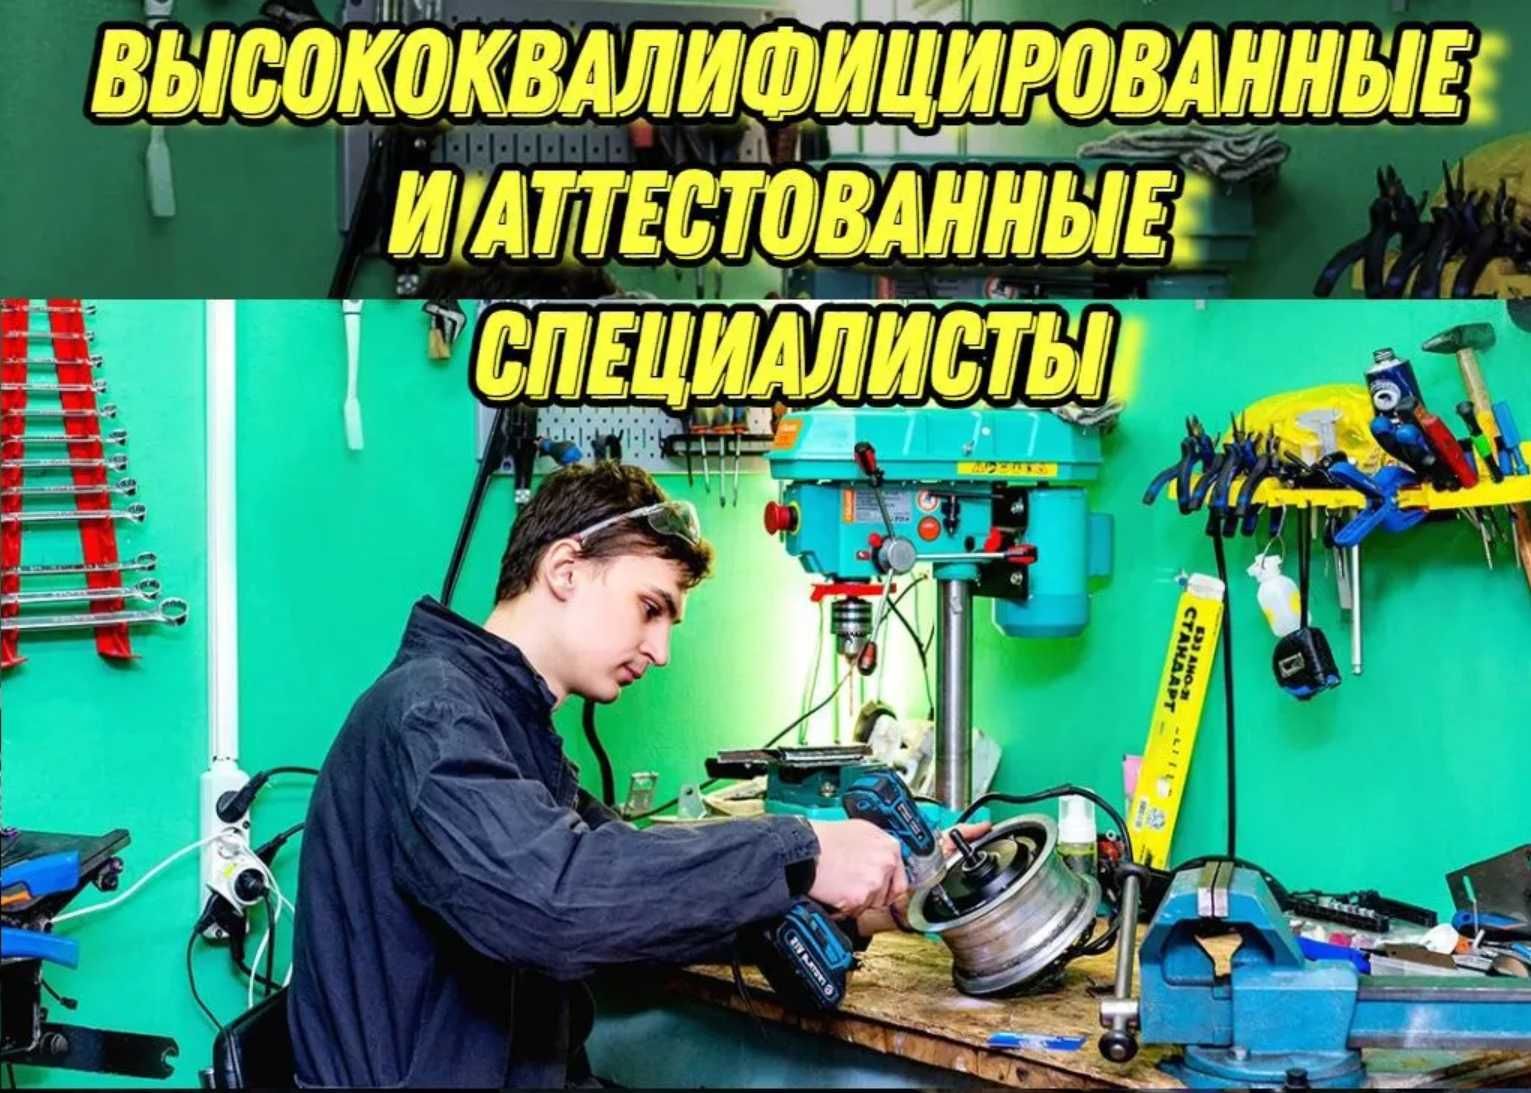 Ремонт гироскутеров, электросамокатов, ситикоко в Одессе